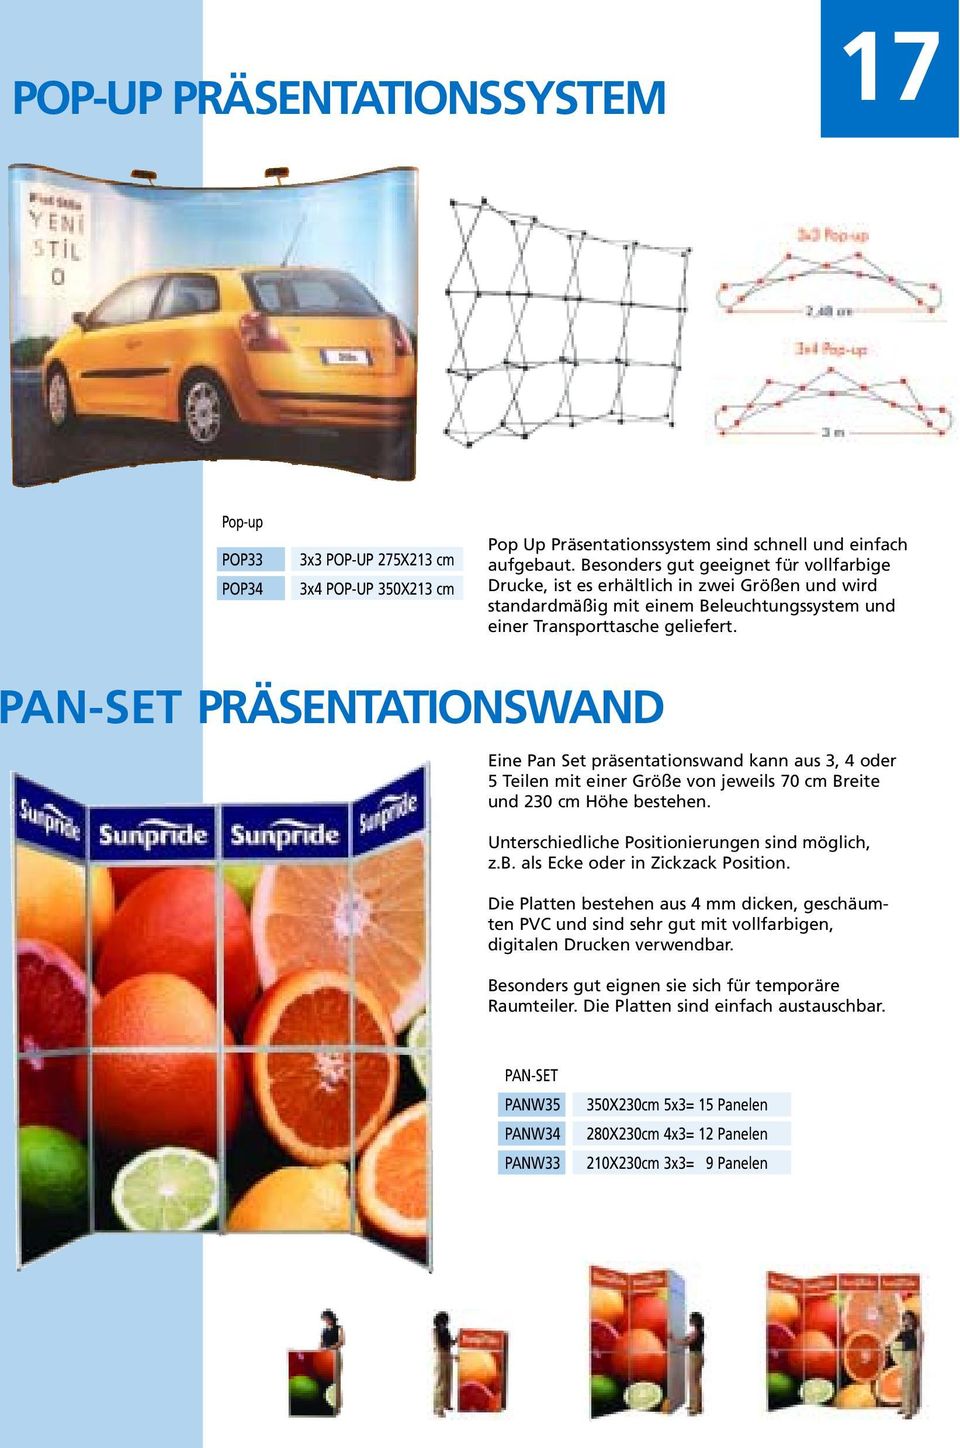 PAN-SET PRÄSENTATIONSWAND Eine Pan Set präsentationswand kann aus 3, 4 oder 5 Teilen mit einer Größe von jeweils 70 cm Breite und 230 cm Höhe bestehen.